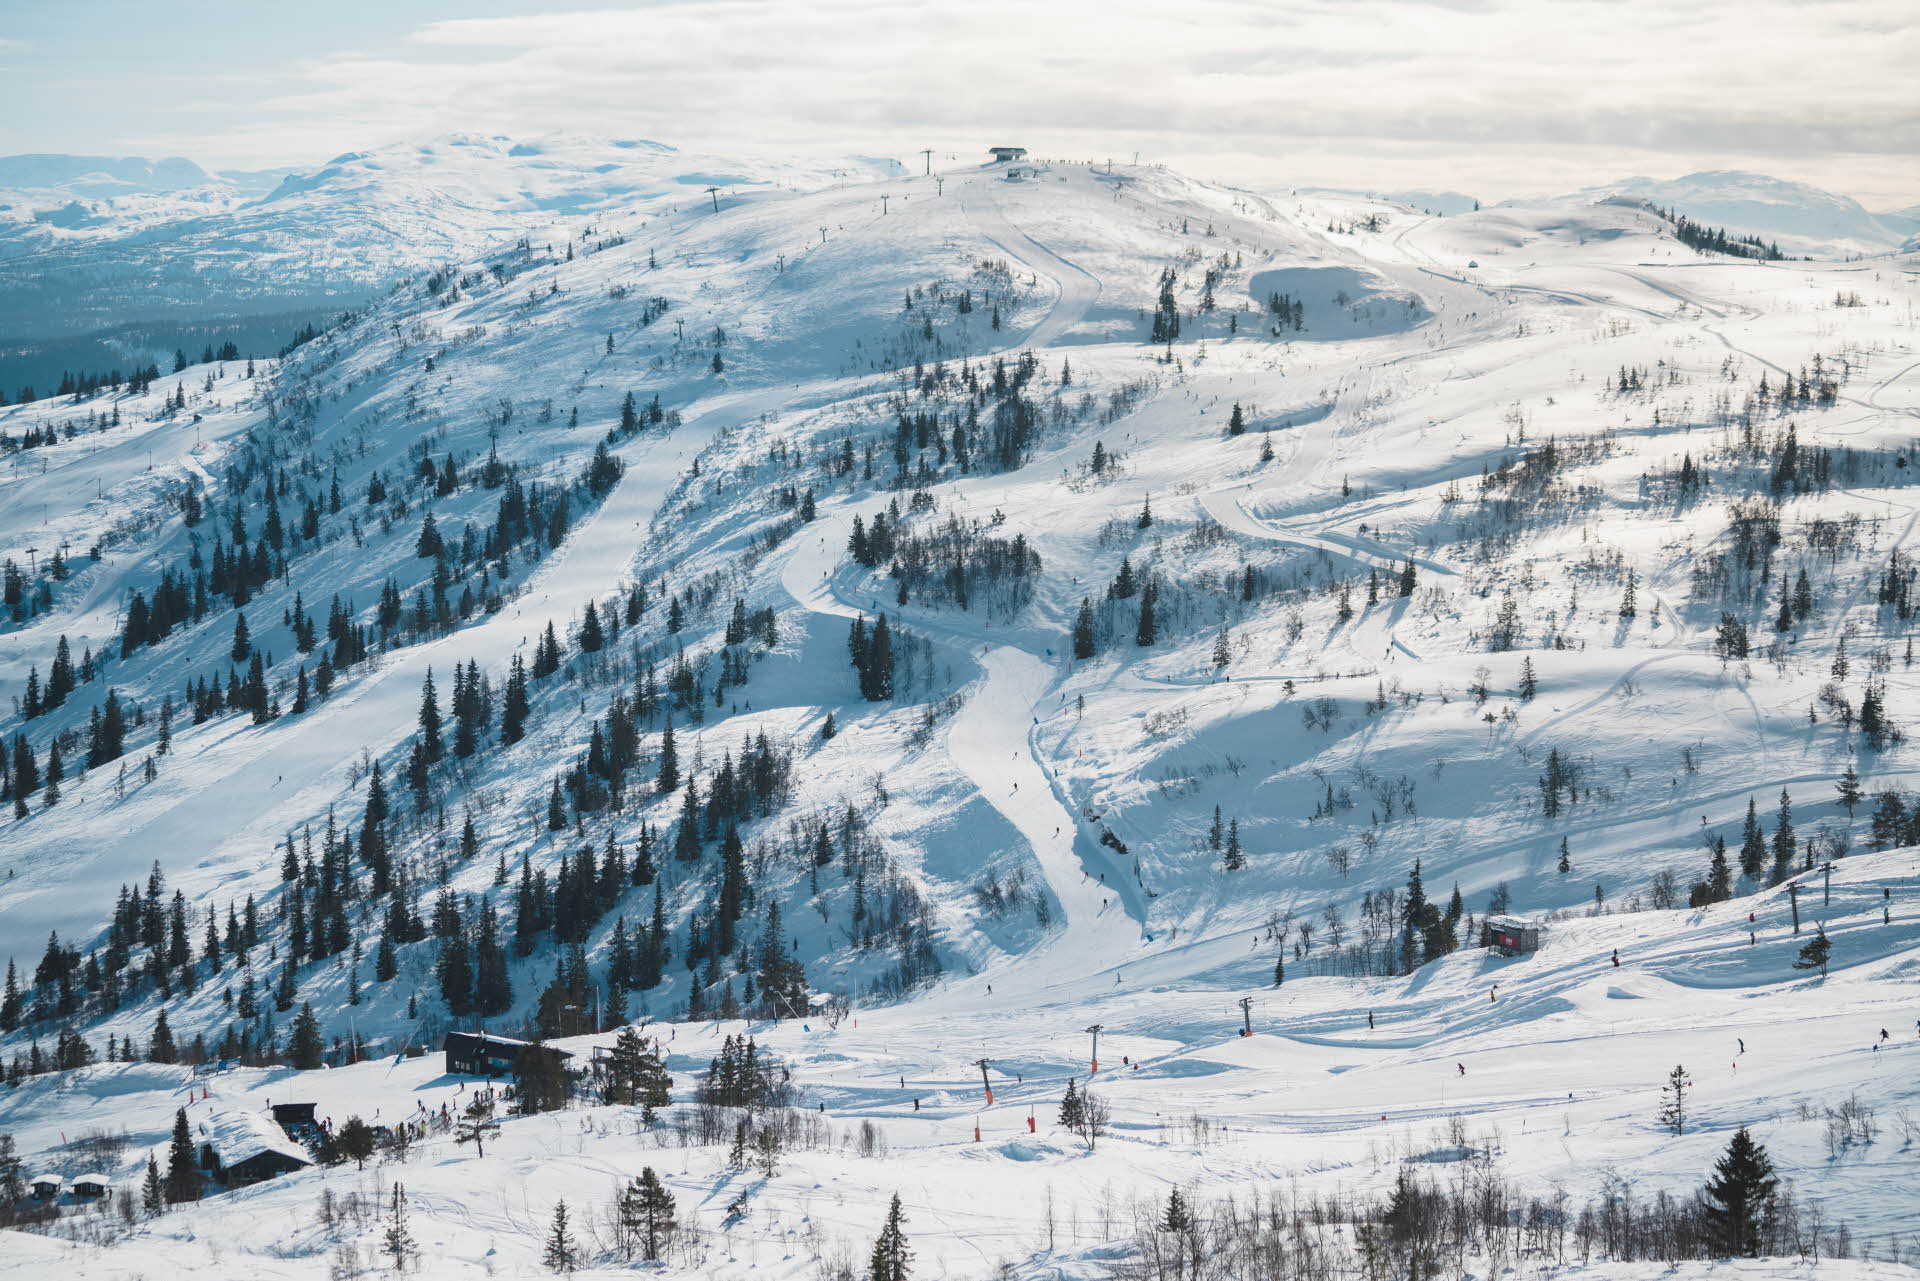 Vue d’ensemble des pistes de la station de ski de Voss près du sommet de la gare du téléphérique de Voss dans un paysage hivernal enneigé parsemé de sapins